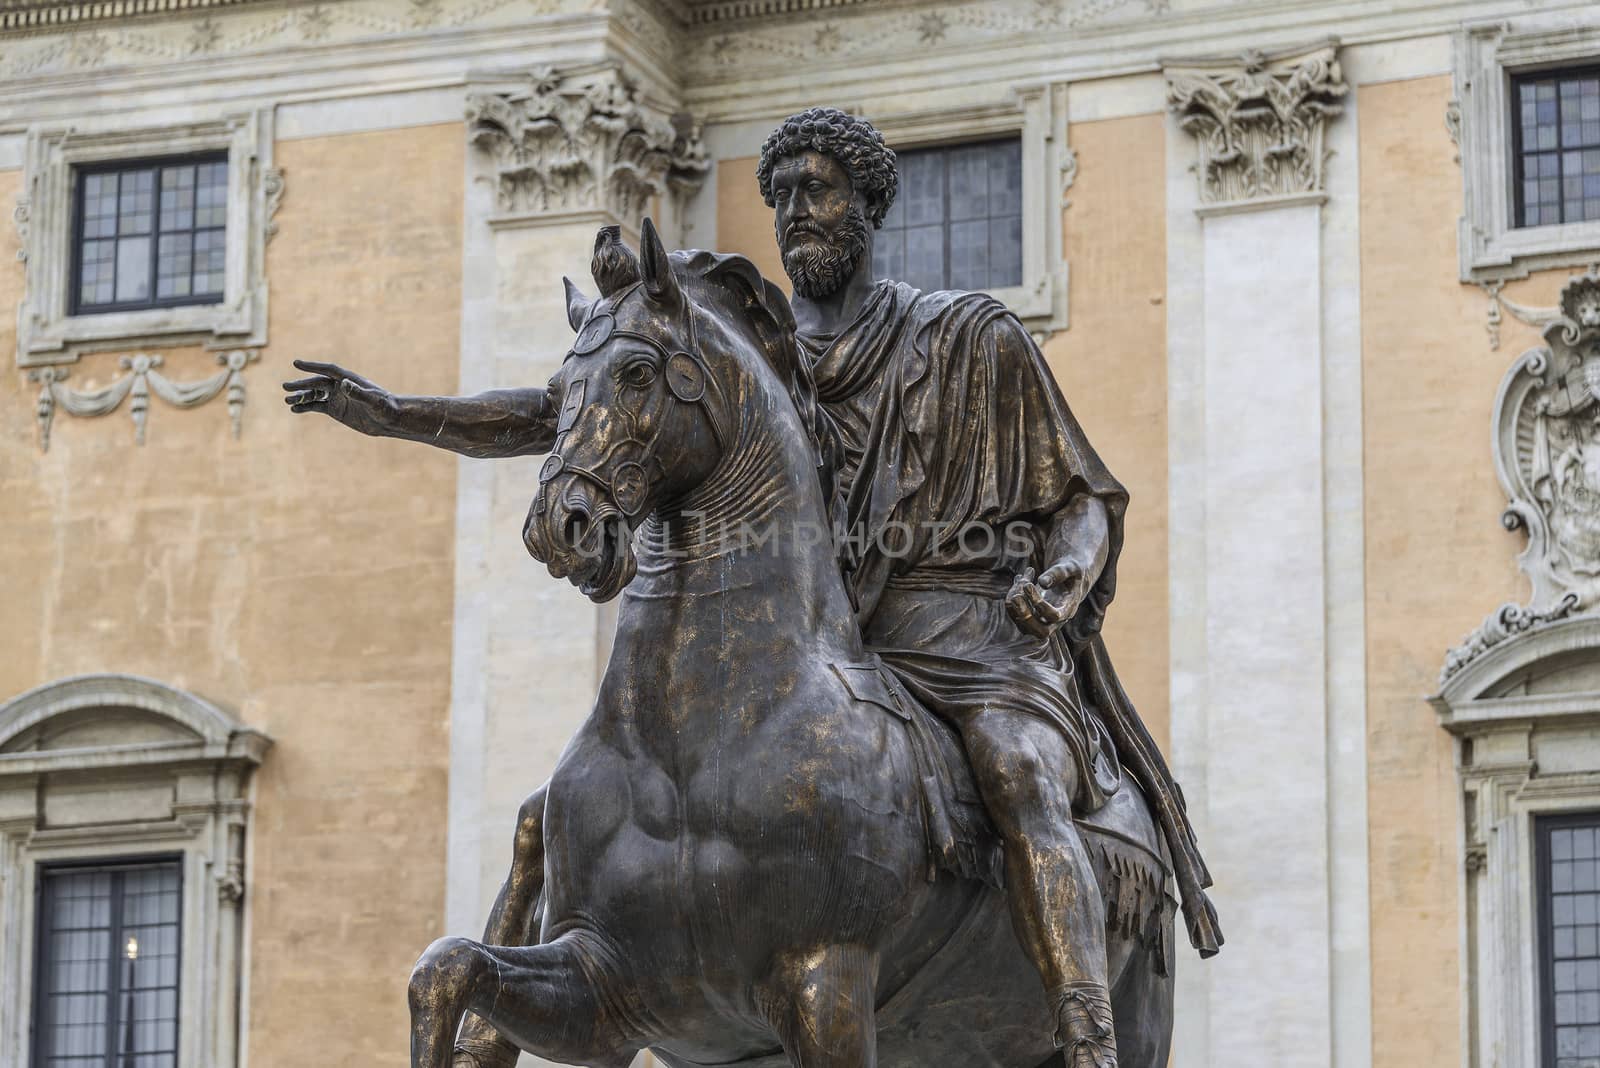 Equestrian Statue of Marcus Aurelius at Piazza del Campidoglio, Rome, Italy, 2014